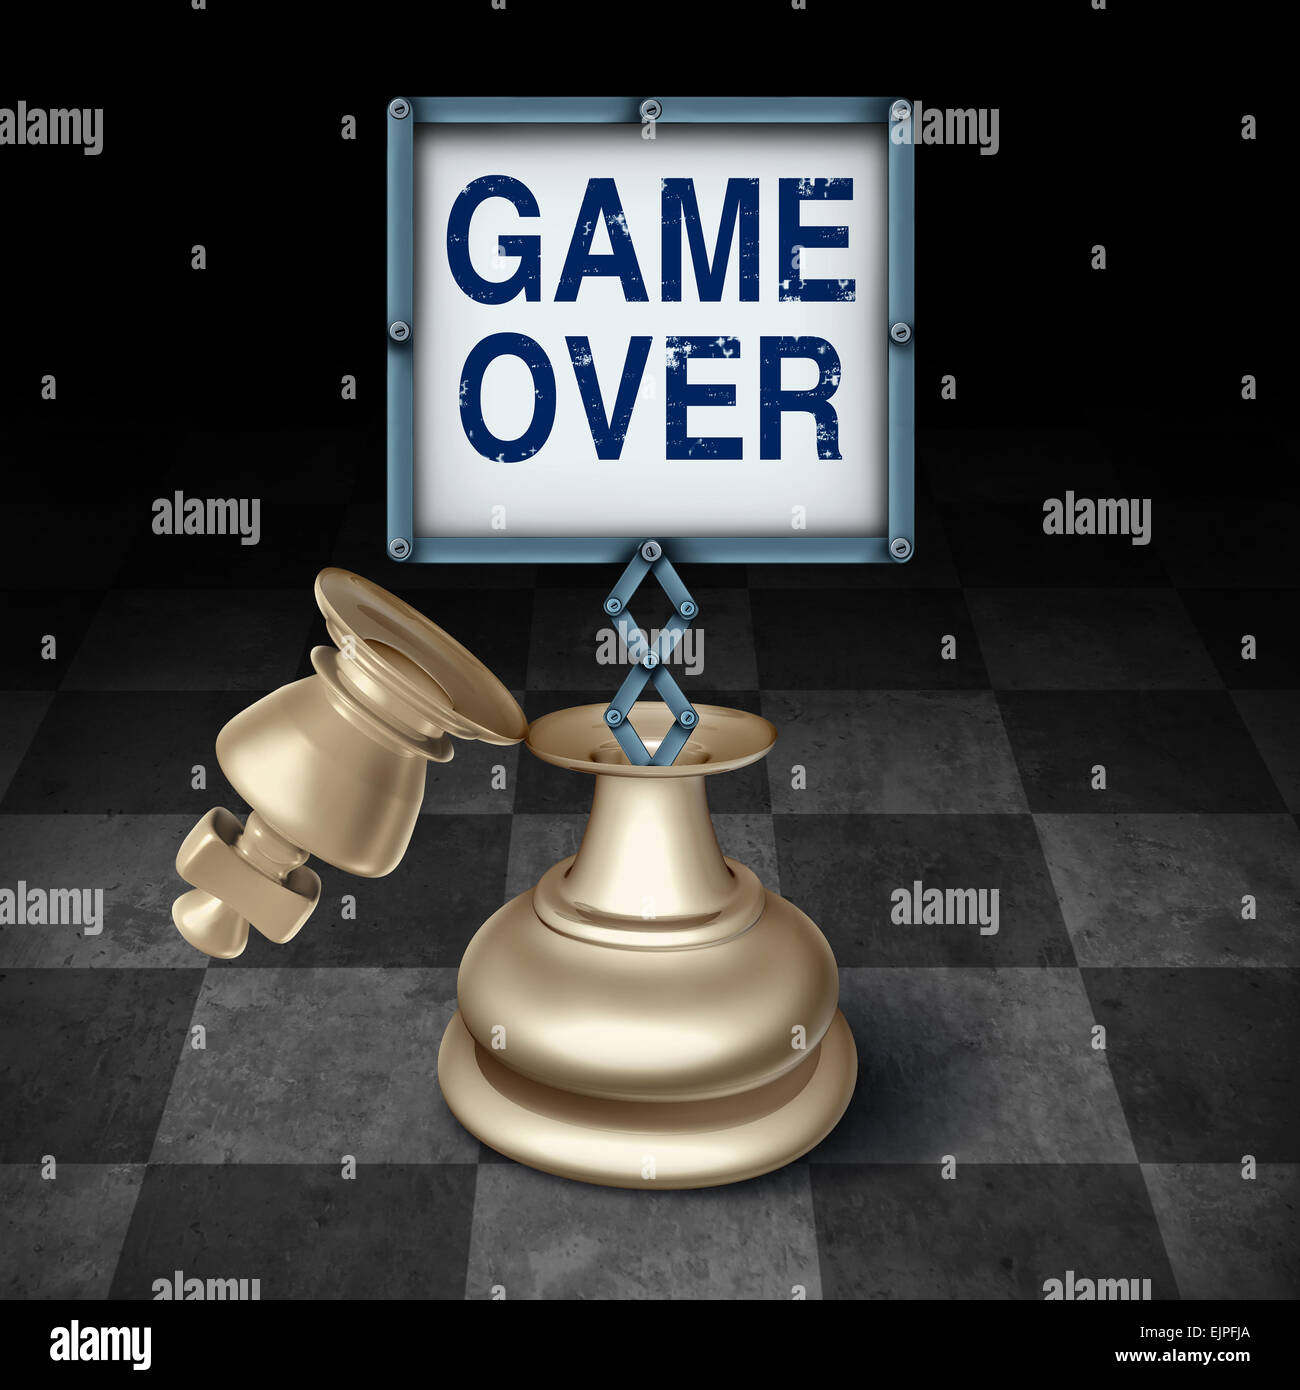 Spiel über Business-Konzept als eine offene König Schachfigur auf einem karierten Brett mit einem Schild mit Worten, die wettbewerbsfähige Metapher darstellt und symbol für das Ende oder die Kündigung als Gewinner oder Verlierer. Stockfoto